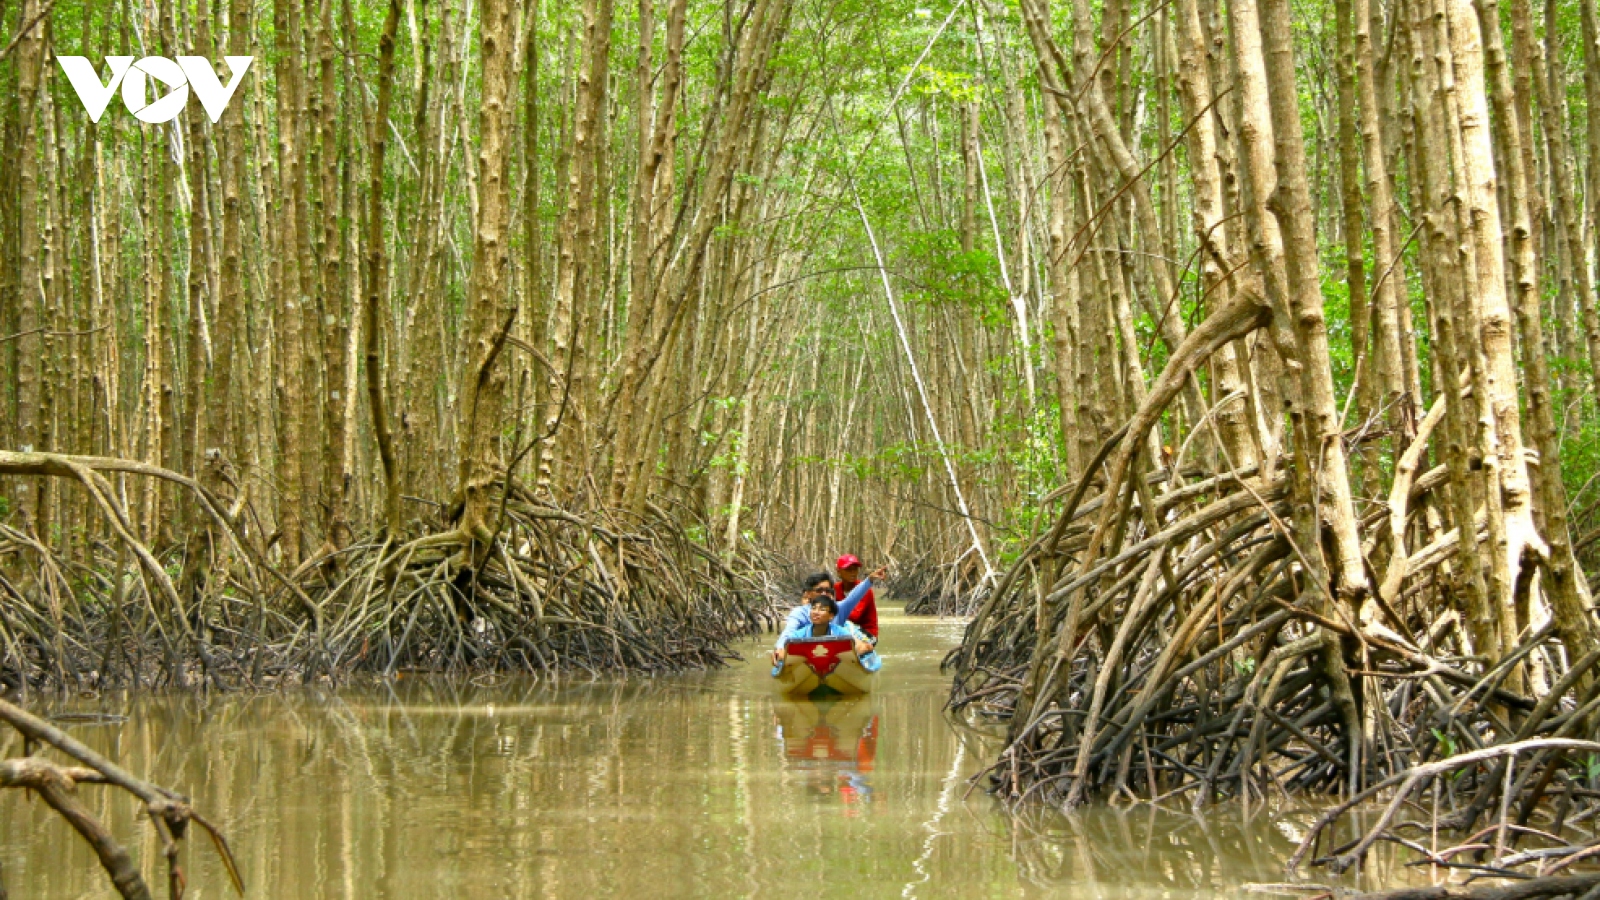 Phát triển rừng bền vững ở Cà Mau - Để người dân tự giữ, tái tạo rừng